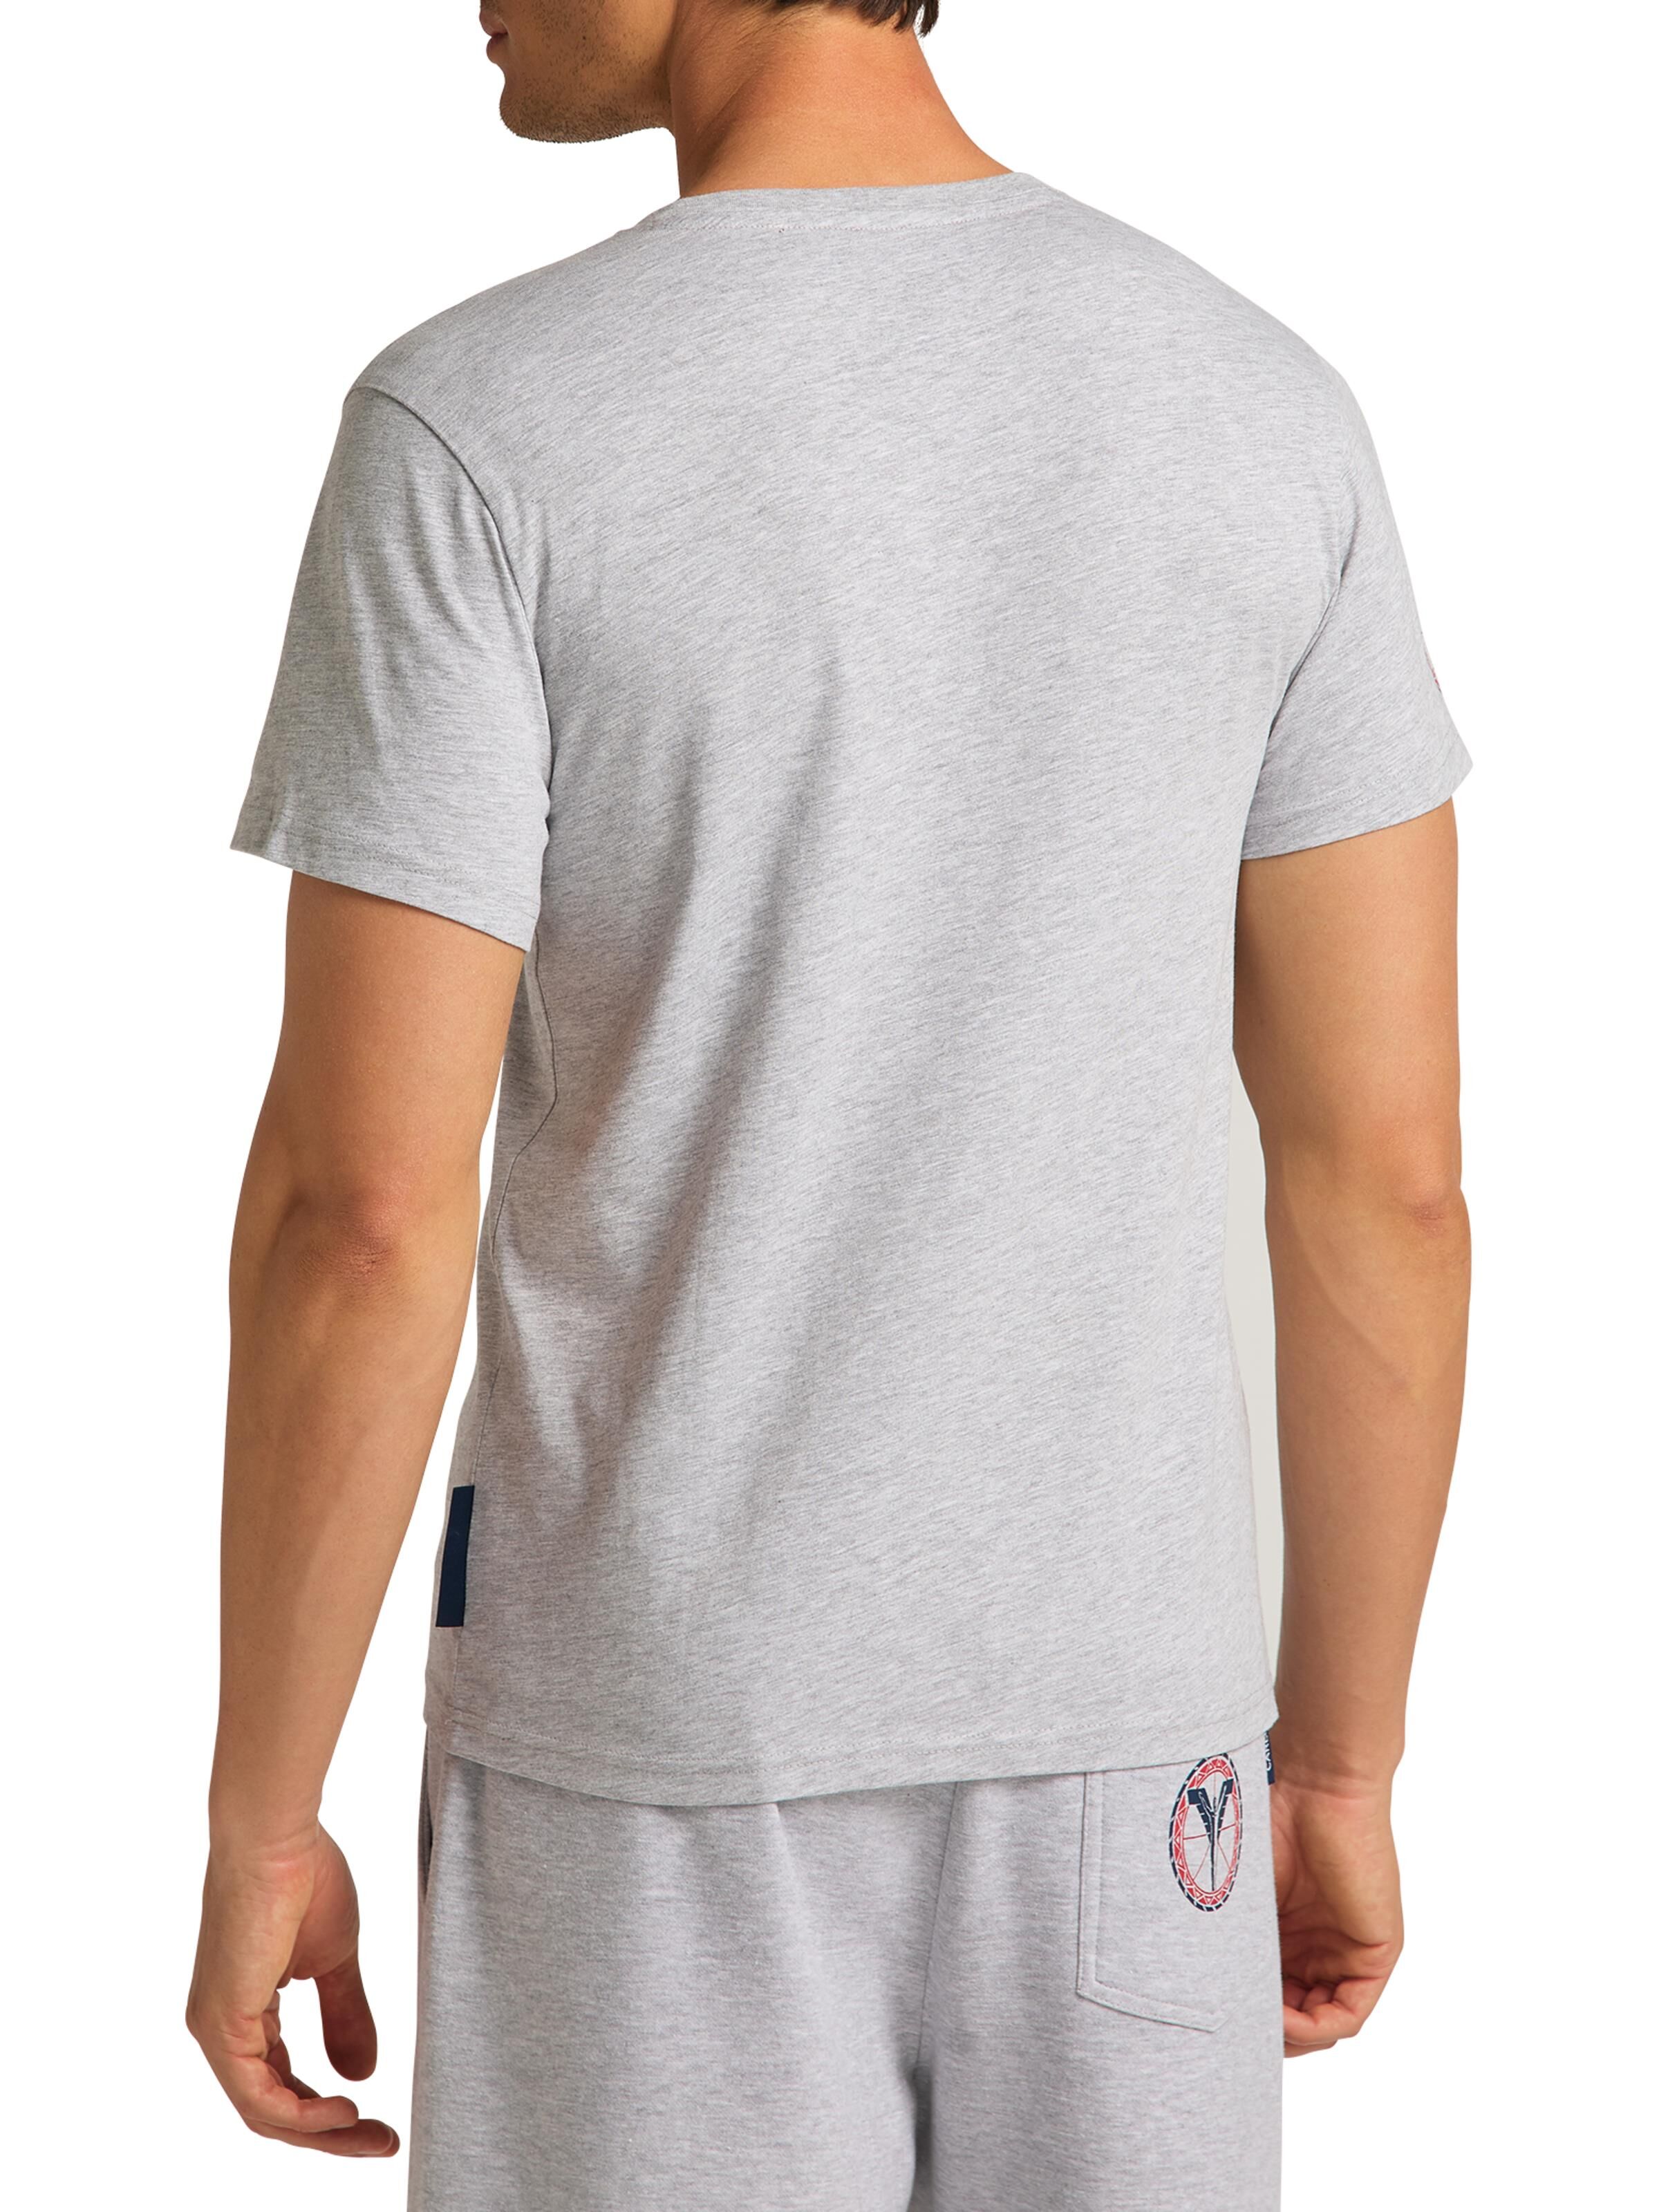 CARLO COLUCCI Atletico T-Shirt